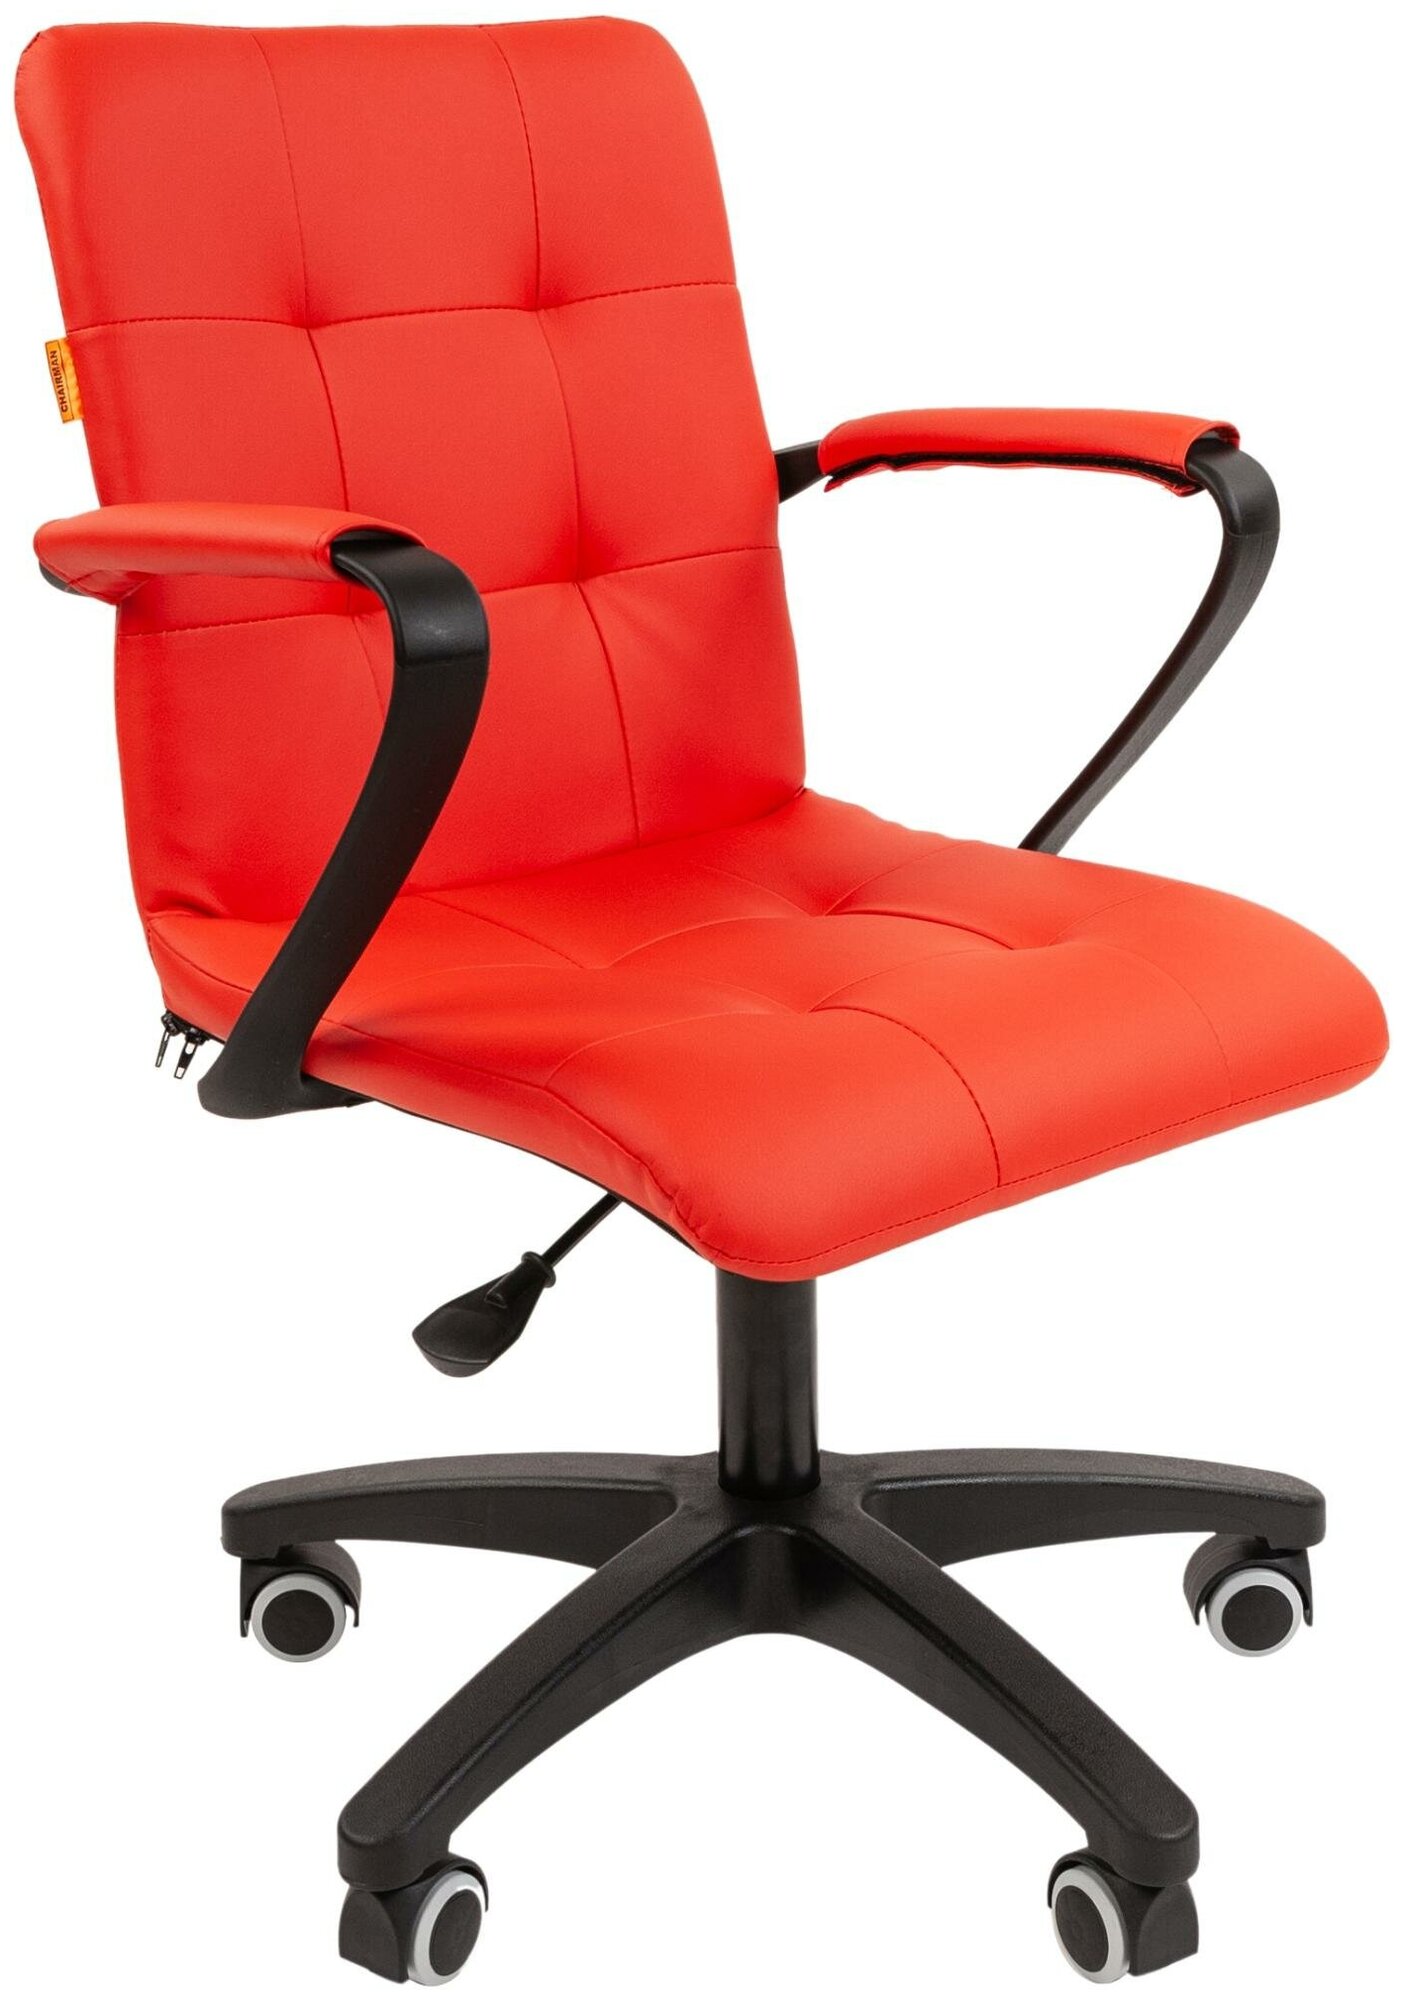 Компьютерное кресло Chairman 030 офисное (обивка: экокожа, крестовина полиуретан,с подлокотниками, Red)